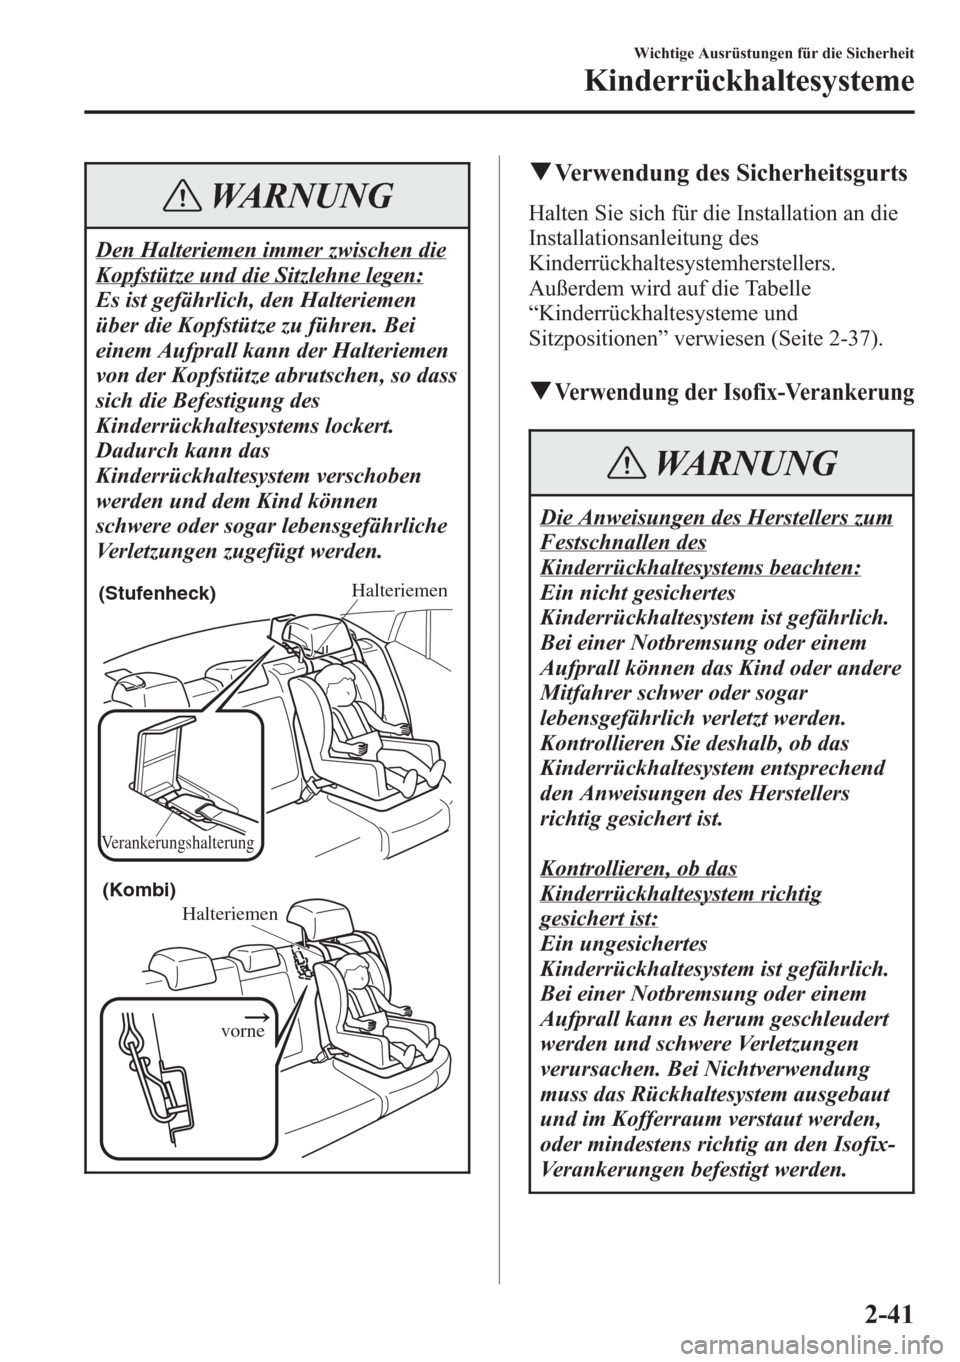 MAZDA MODEL 6 2015  Betriebsanleitung (in German) WARNUNG
Den Halteriemen immer zwischen die
Kopfstütze und die Sitzlehne legen:
Es ist gefährlich, den Halteriemen
über die Kopfstütze zu führen. Bei
einem Aufprall kann der Halteriemen
von der Ko